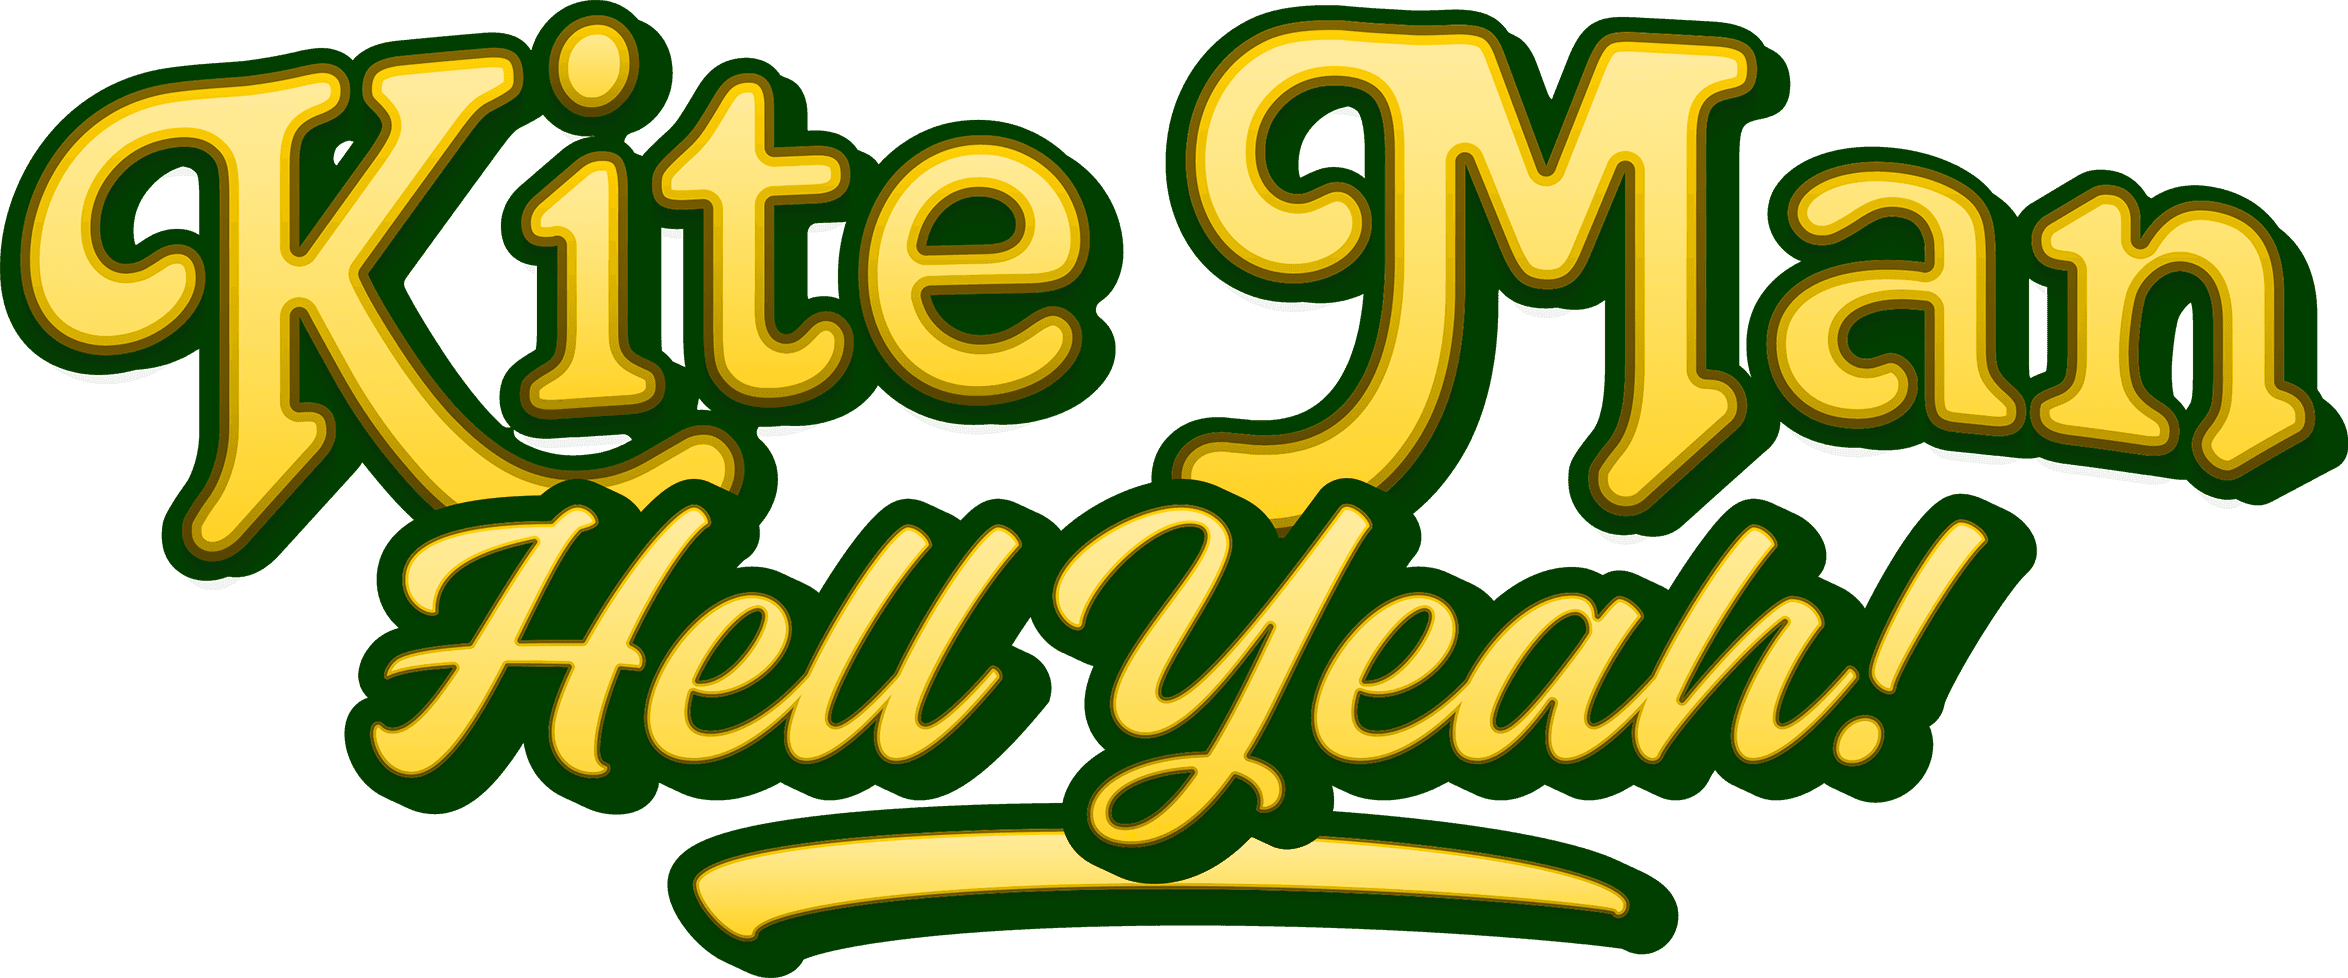 Kite Man: Hell Yeah! logo